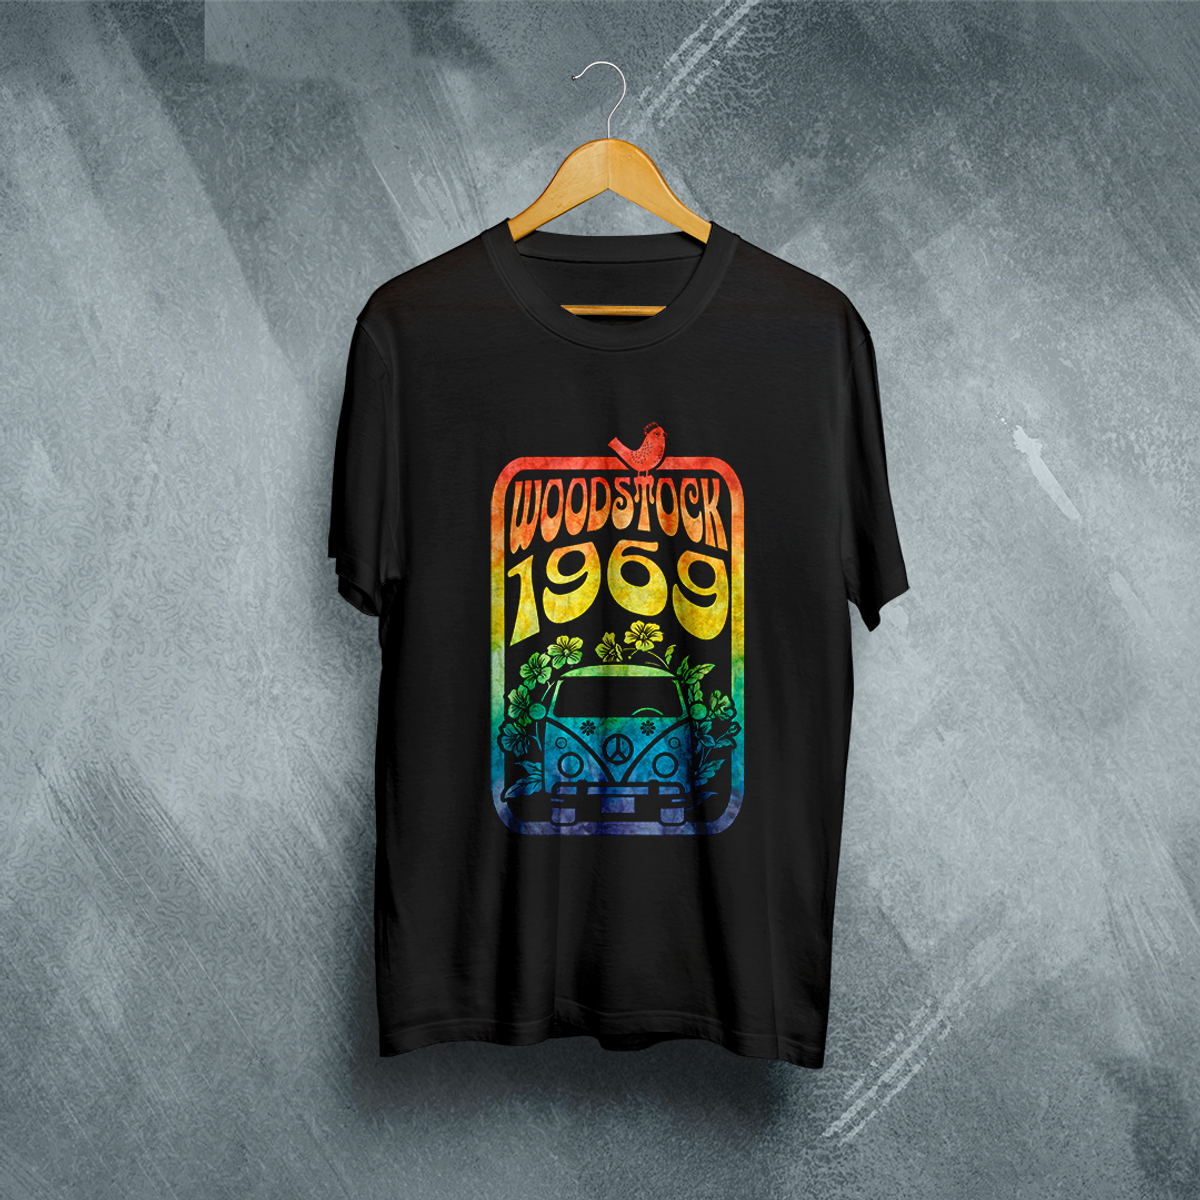 Nome do produto: Camiseta Plus Size Vivax - Woodstock 1969